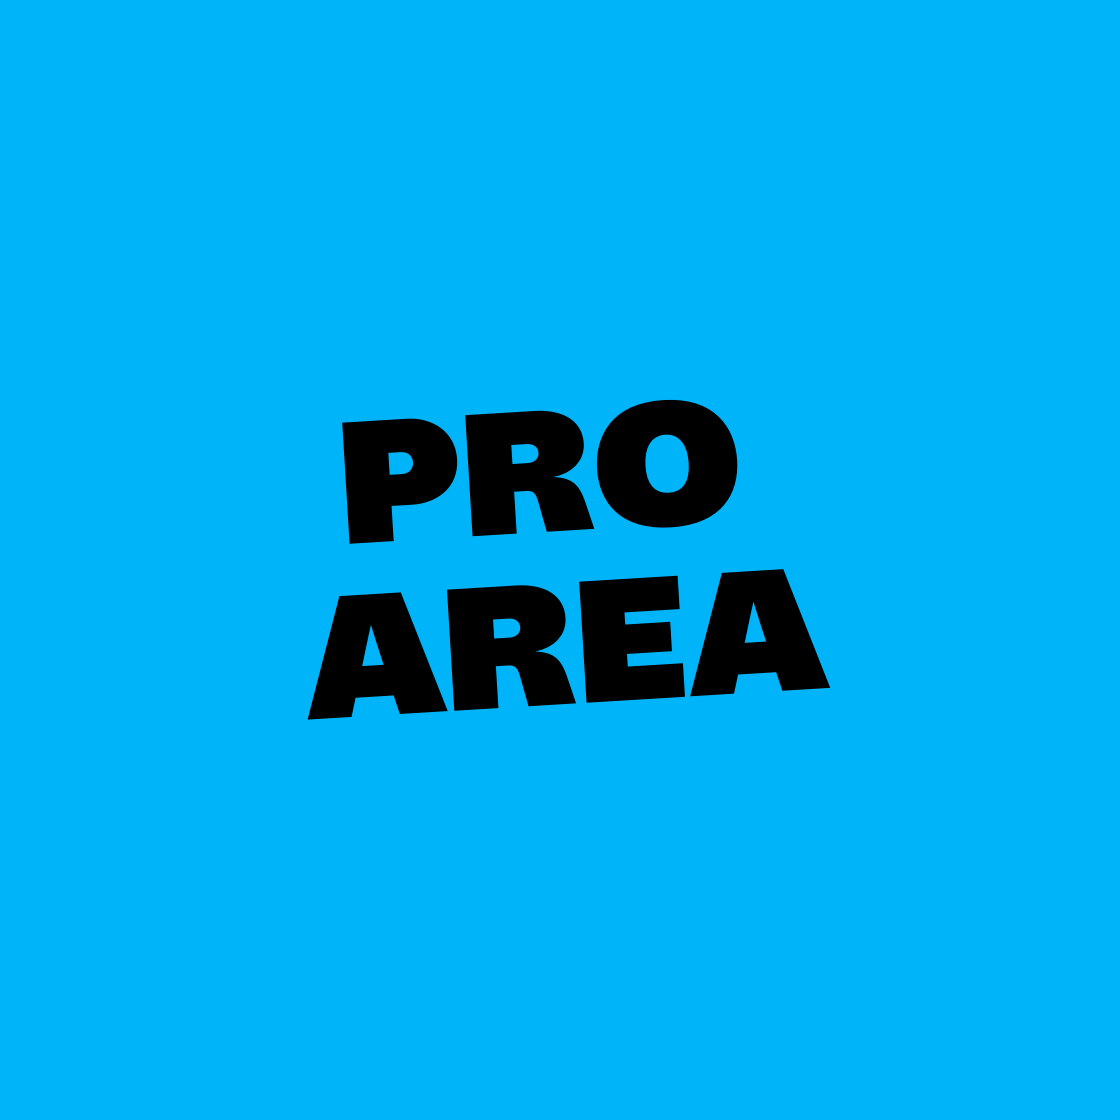 Pro Area